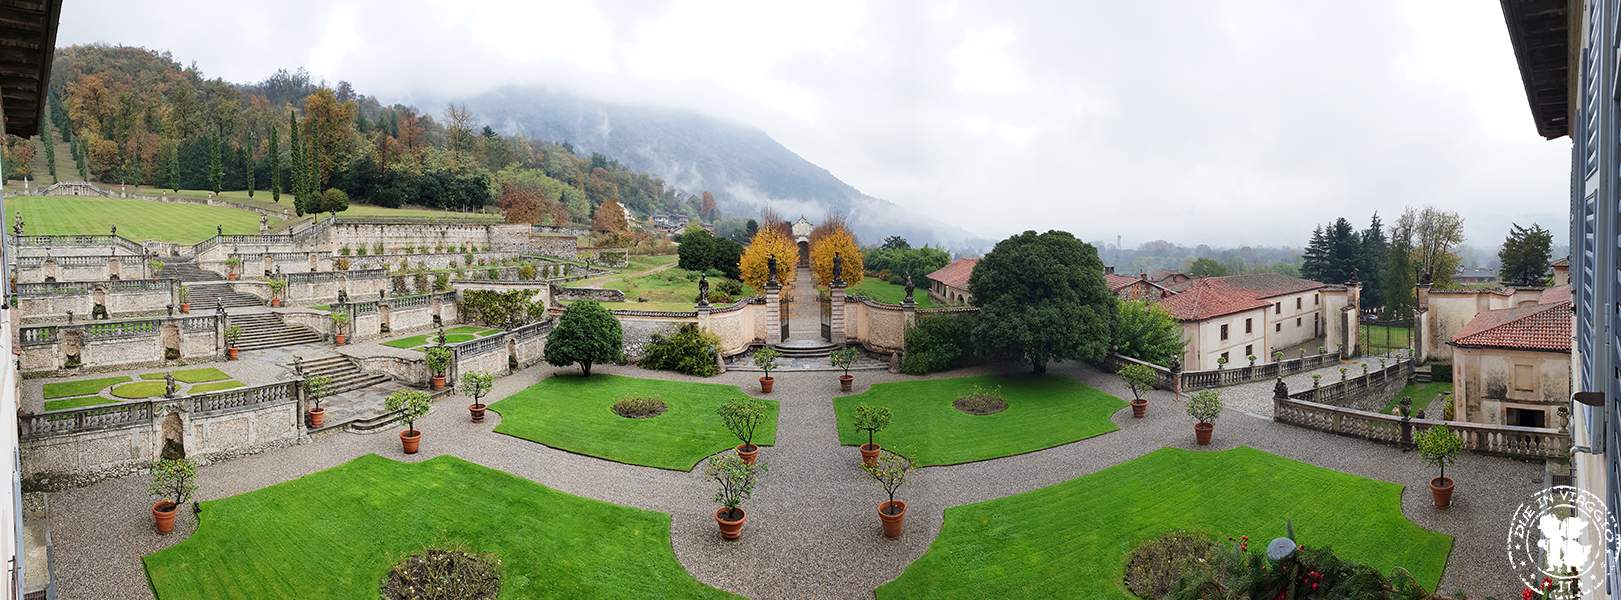 Villa della Porta Bozzolo Casalzuigno giardino all'italiana